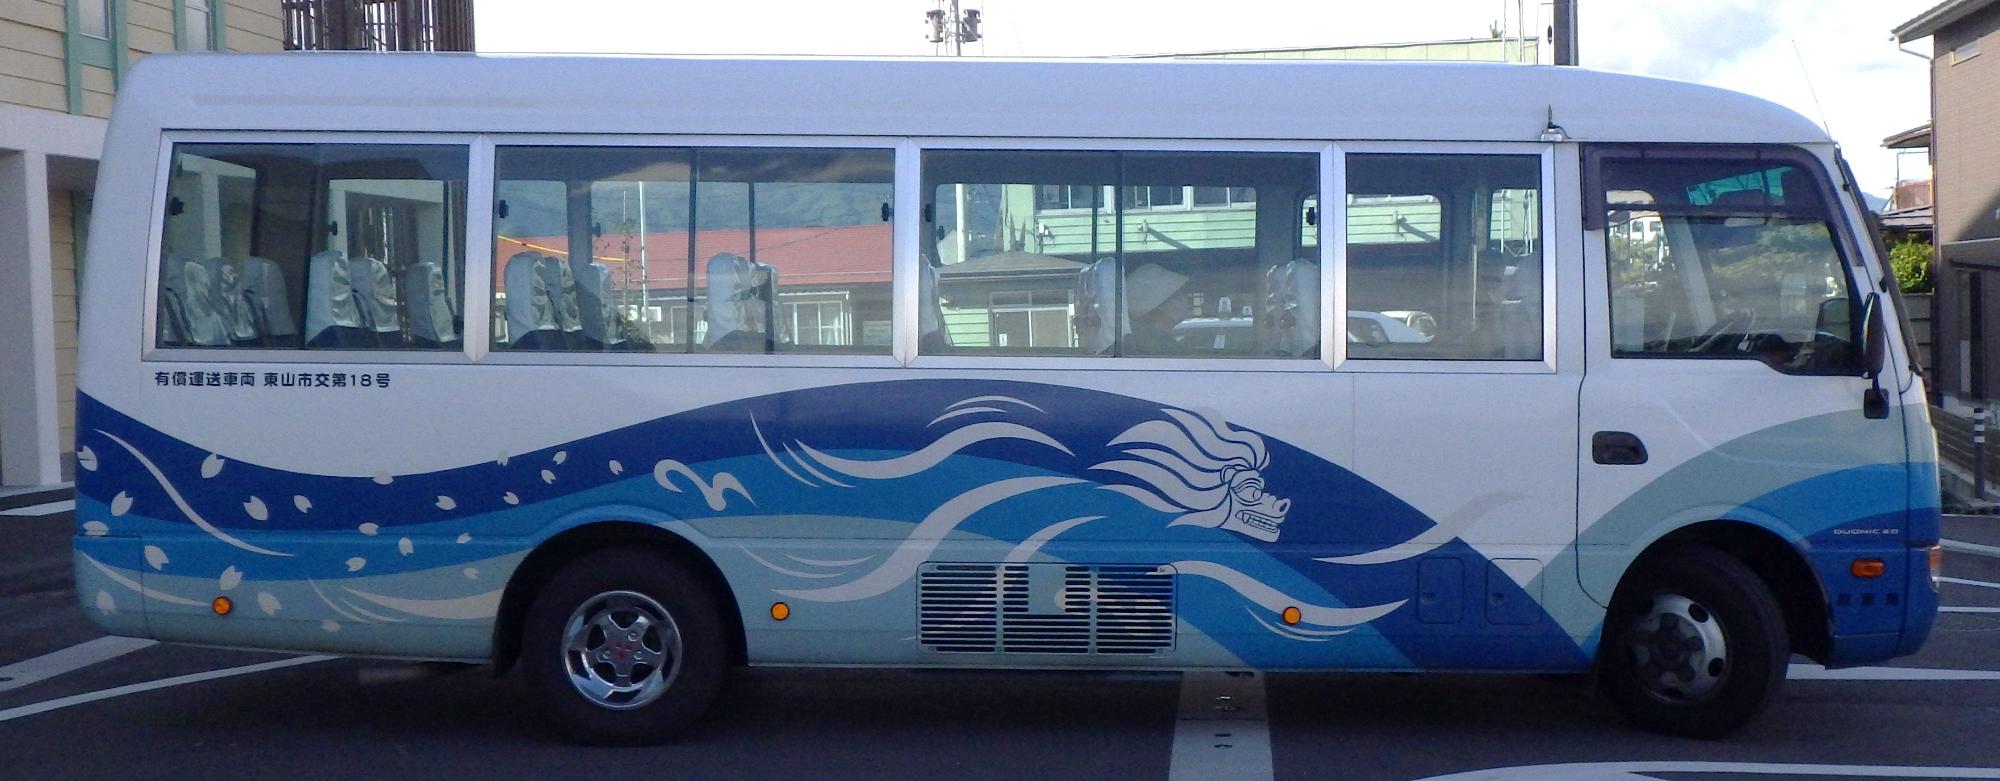 西根バス横向きの写真